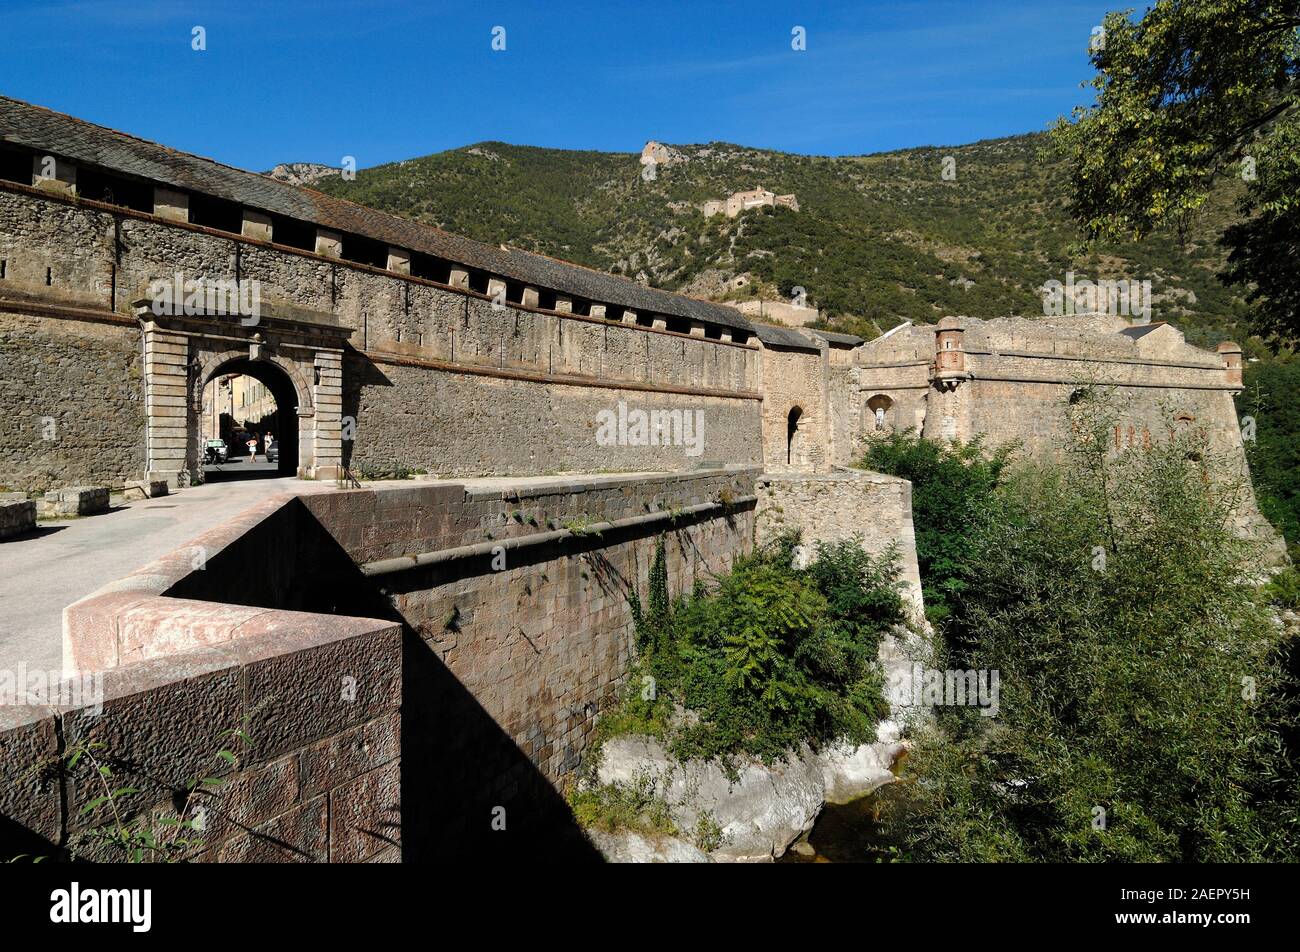 Vauban Ramparts or Fortress Villefranche-de-Conflent Pyrénées-Orientales France Stock Photo